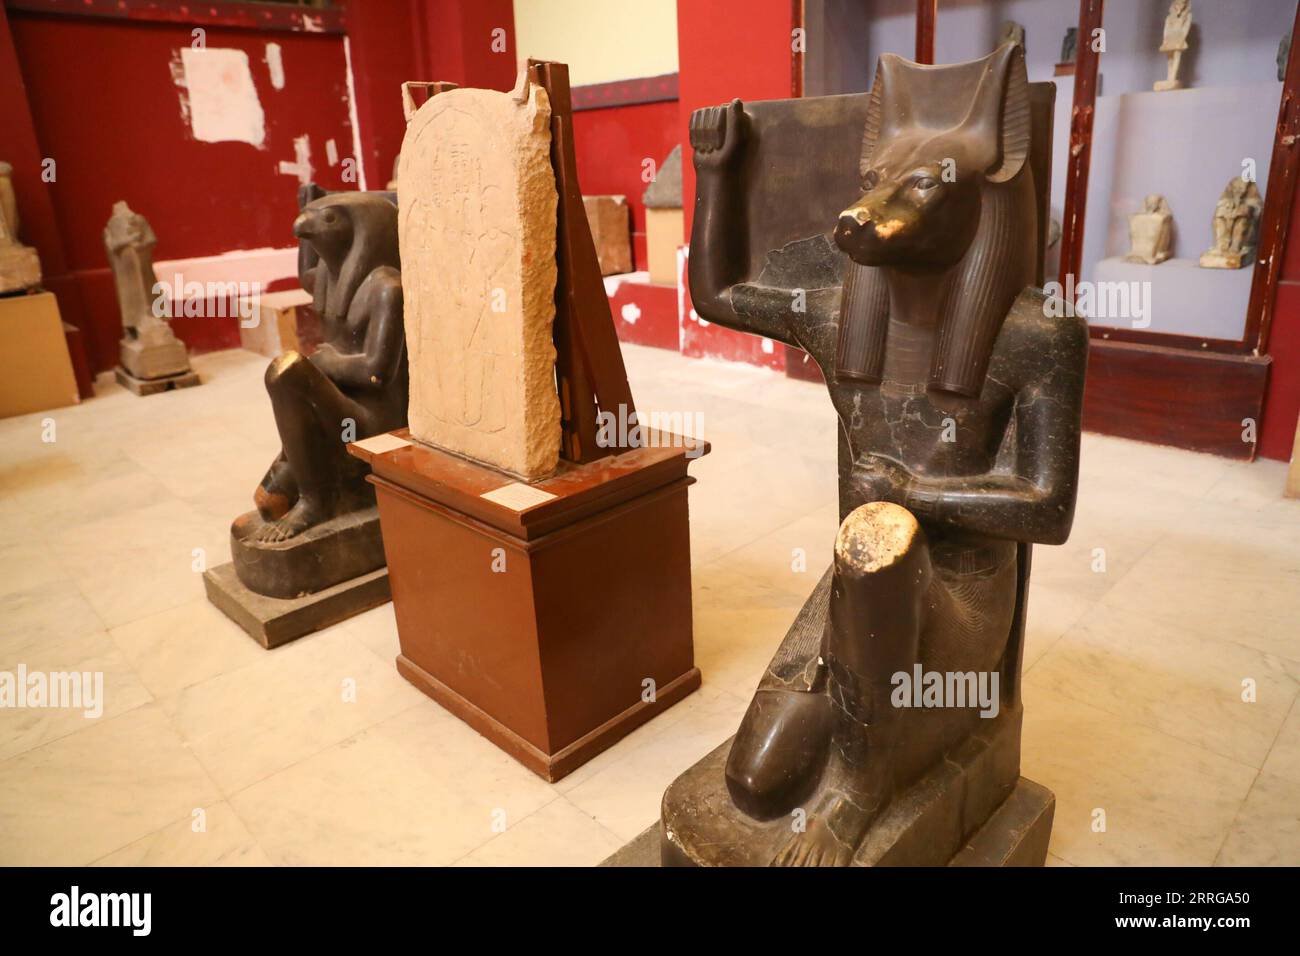 220515 -- LE CAIRE, le 15 mai 2022 -- une photo prise le 14 mai 2022 montre une statue du dieu Anubis au Musée égyptien du Caire, en Égypte. En tant que divinité funéraire, Anubis est associé à la momification, aux rituels funéraires et au cimetière dans le mythe égyptien antique, généralement représenté comme un canin noir, ou un homme avec tête de canin. Il peut être trouvé à un grand nombre d'antiquités pharaoniques au Musée égyptien mondialement connu. ÉGYPTE-CAIRE-MUSÉE ÉGYPTIEN-ANUBIS SuixXiankai PUBLICATIONxNOTxINxCHN Banque D'Images